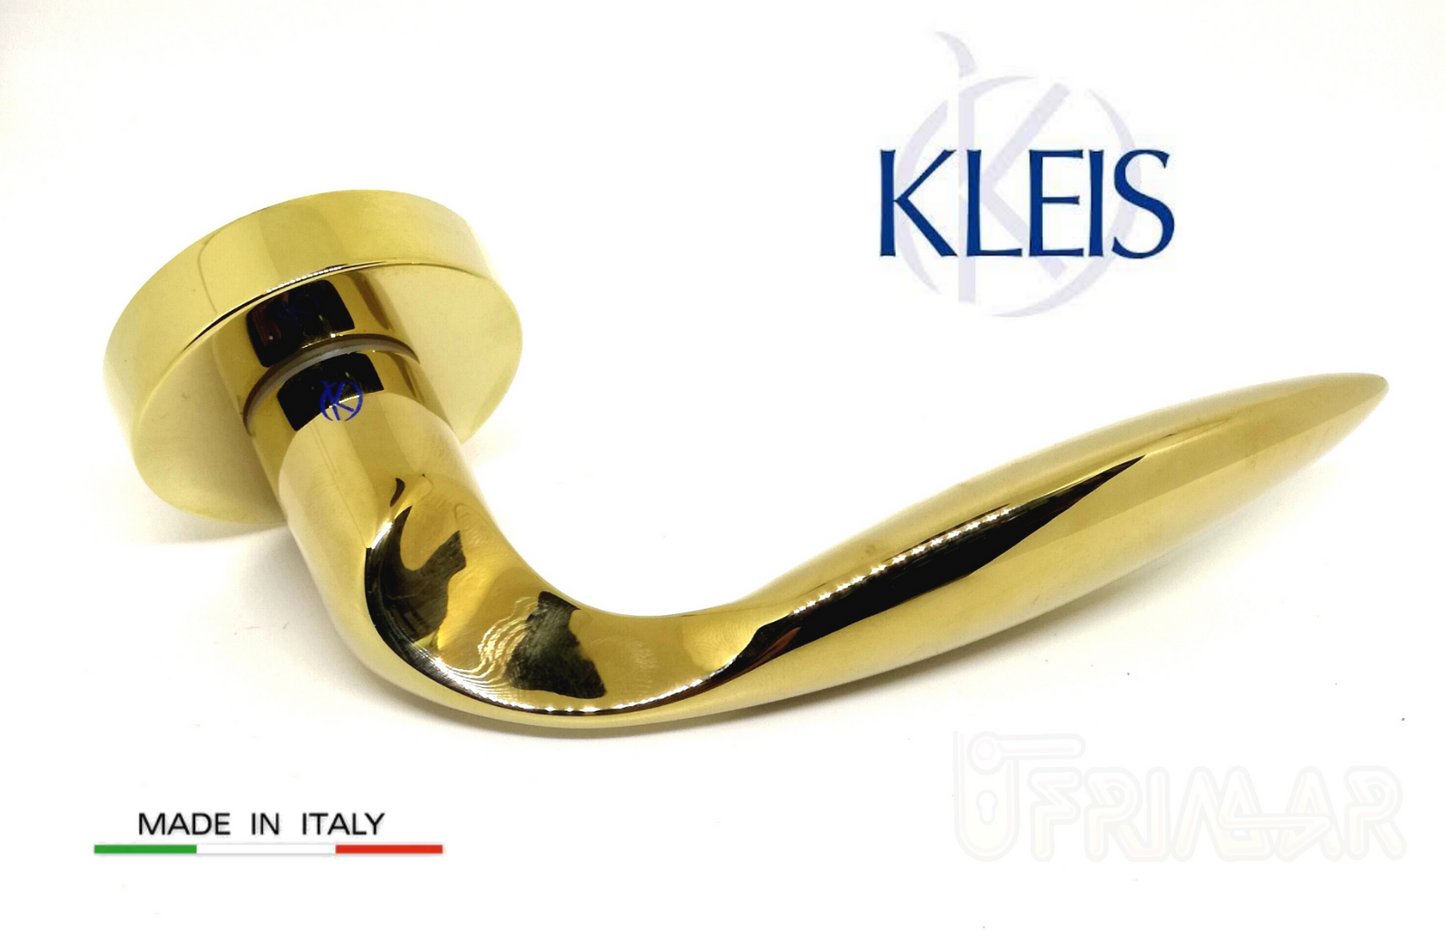 Maniglia KLEIS LIBYA art. 00B1302 Oro PVD maniglie per porte RDS porte interne